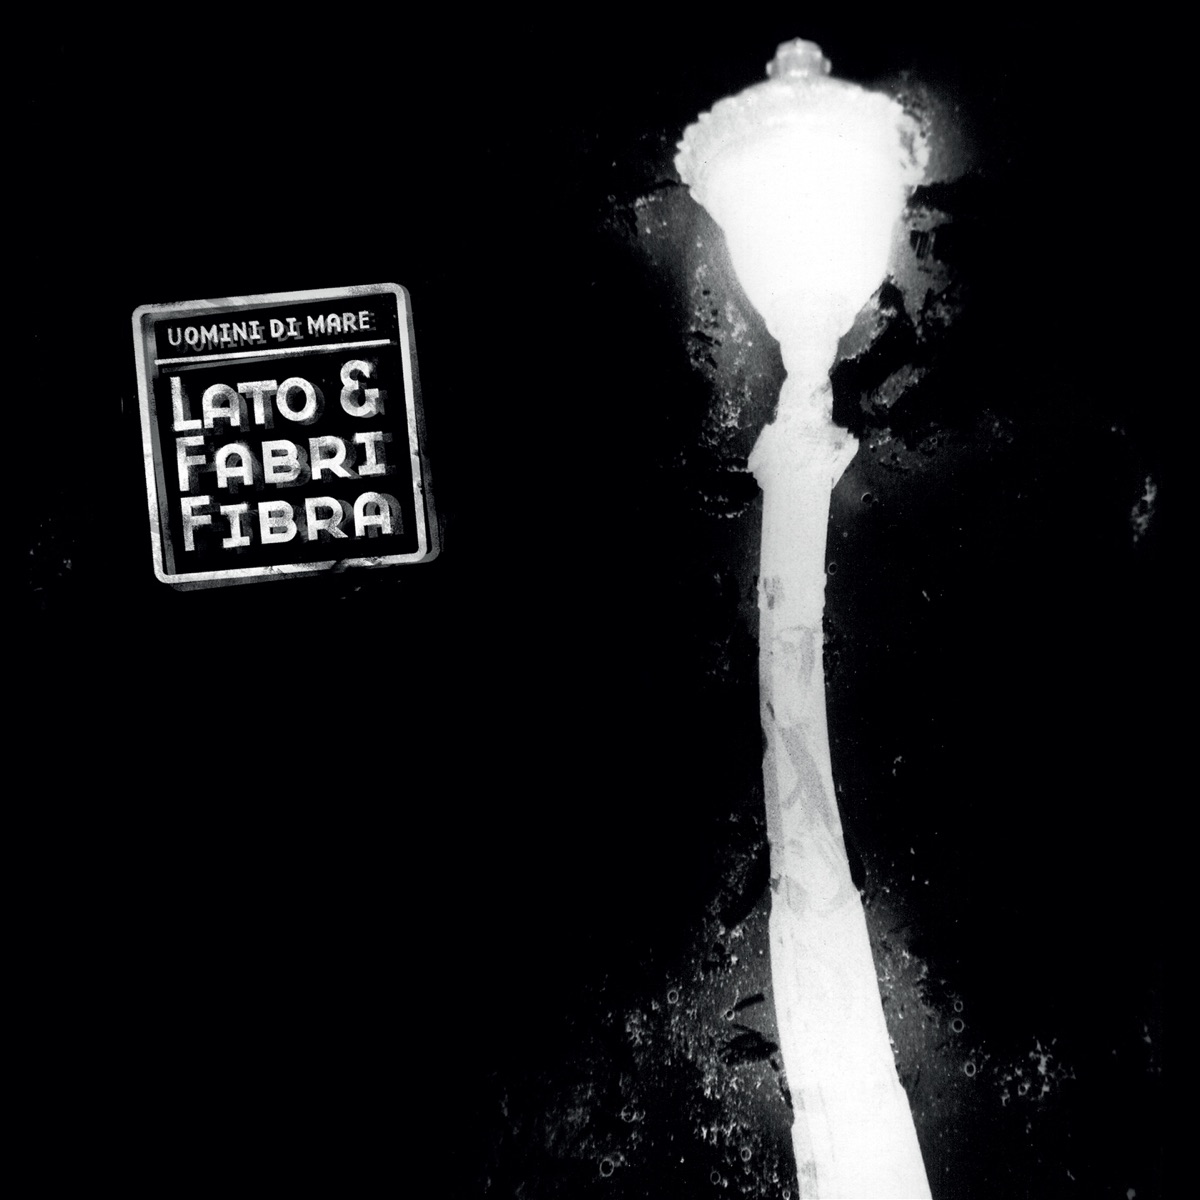 Lato & Fabri Fibra - Album by Uomini Di Mare - Apple Music